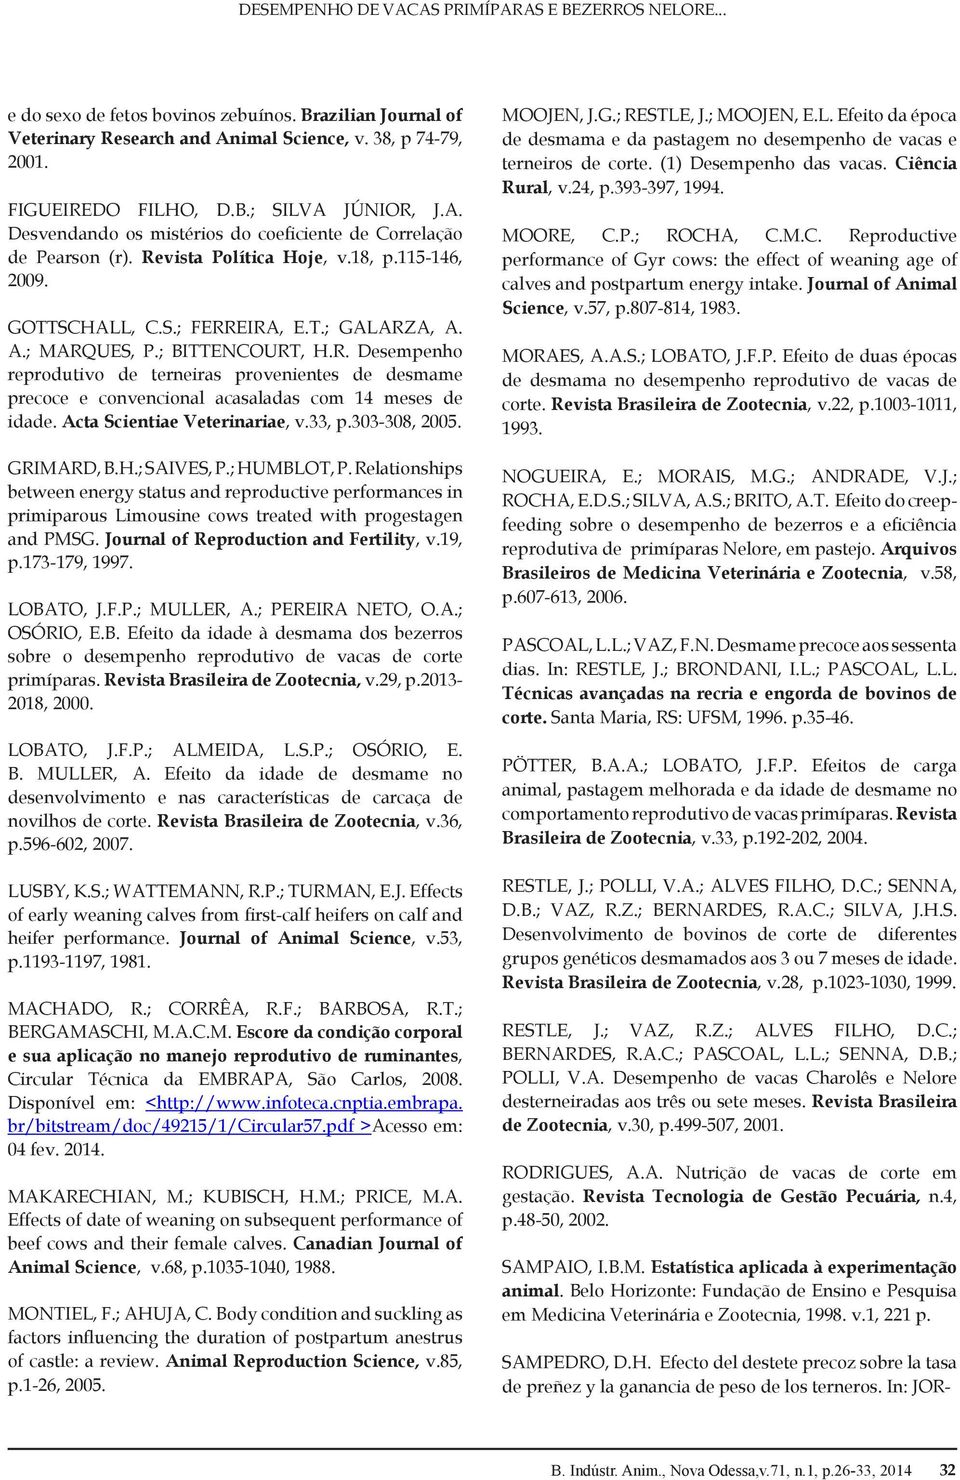 Acta Scientiae Veterinariae, v.33, p.303-308, 2005. GRIMARD, B.H.; SAIVES, P.; HUMBLOT, P.